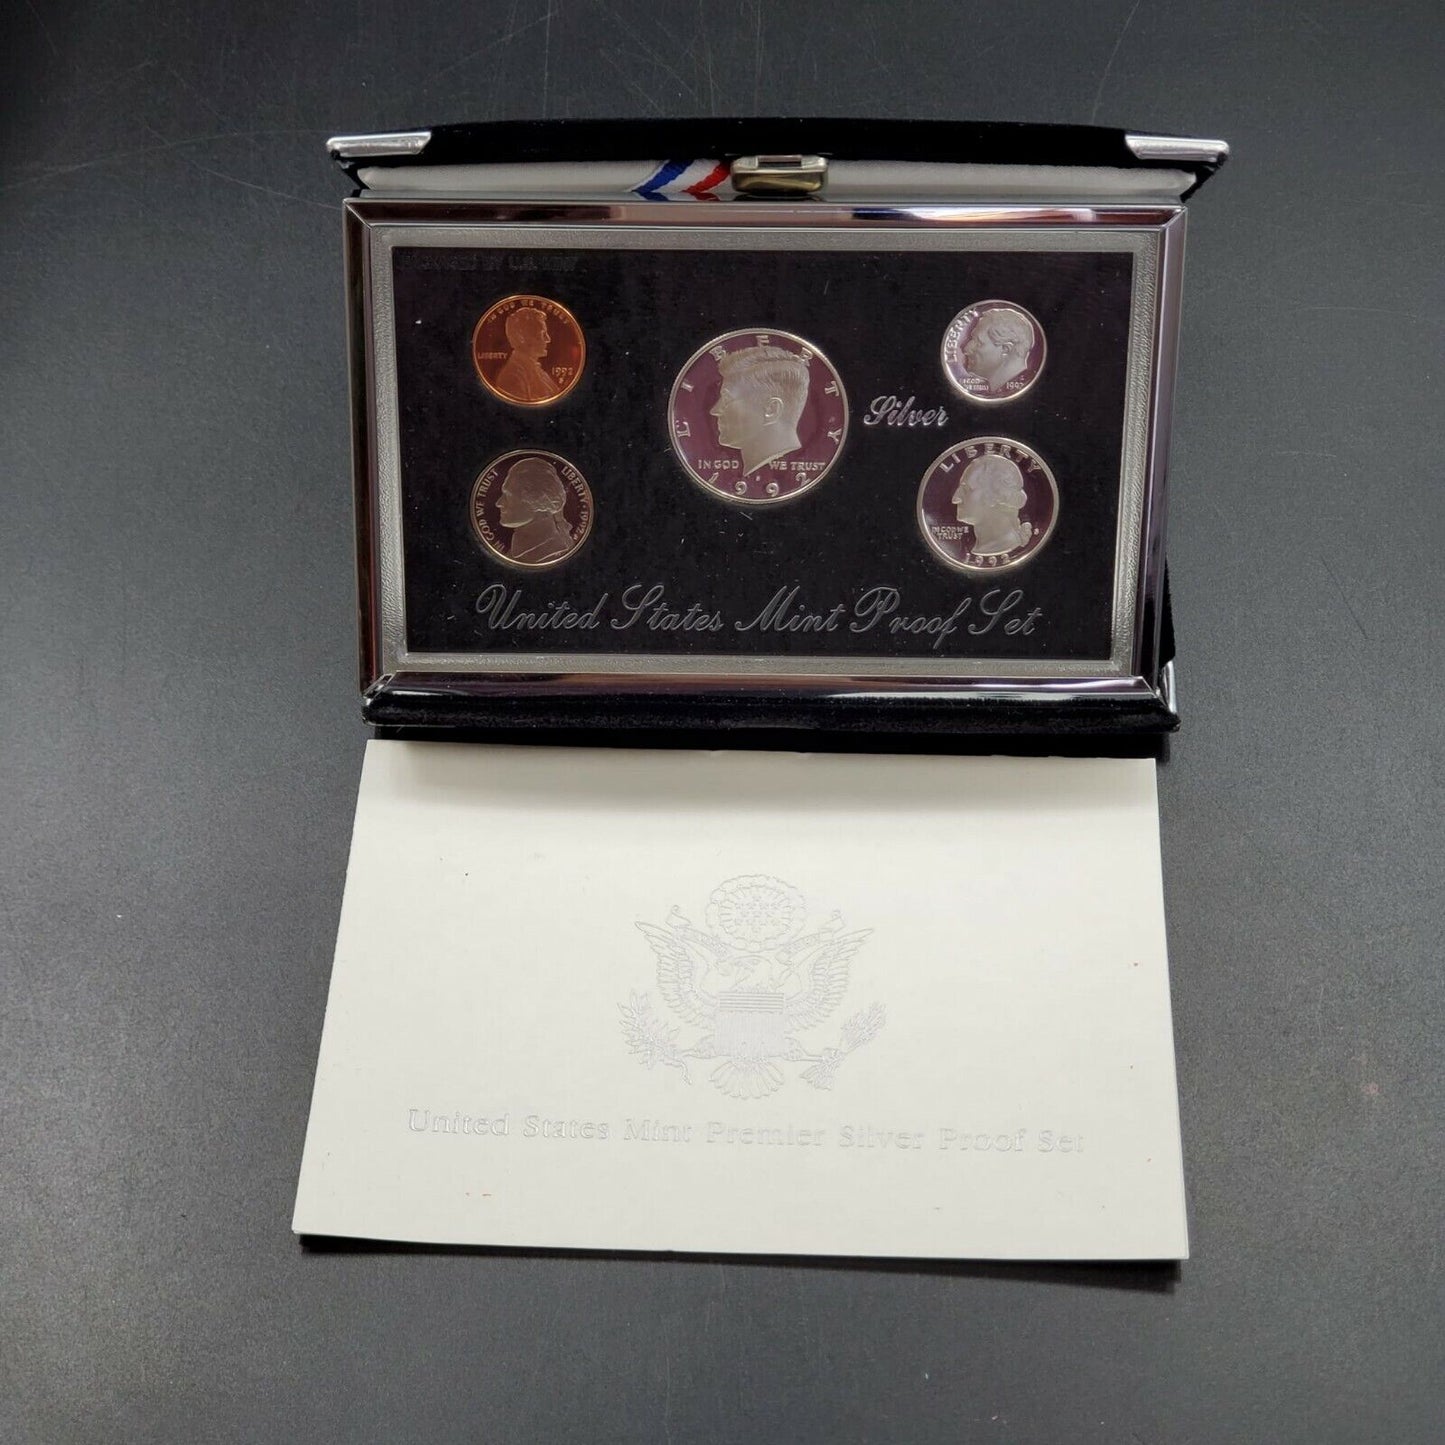 1992 S US Mint Premier Silver Proof Set OGP Box COA - RobinsonsCoinTown